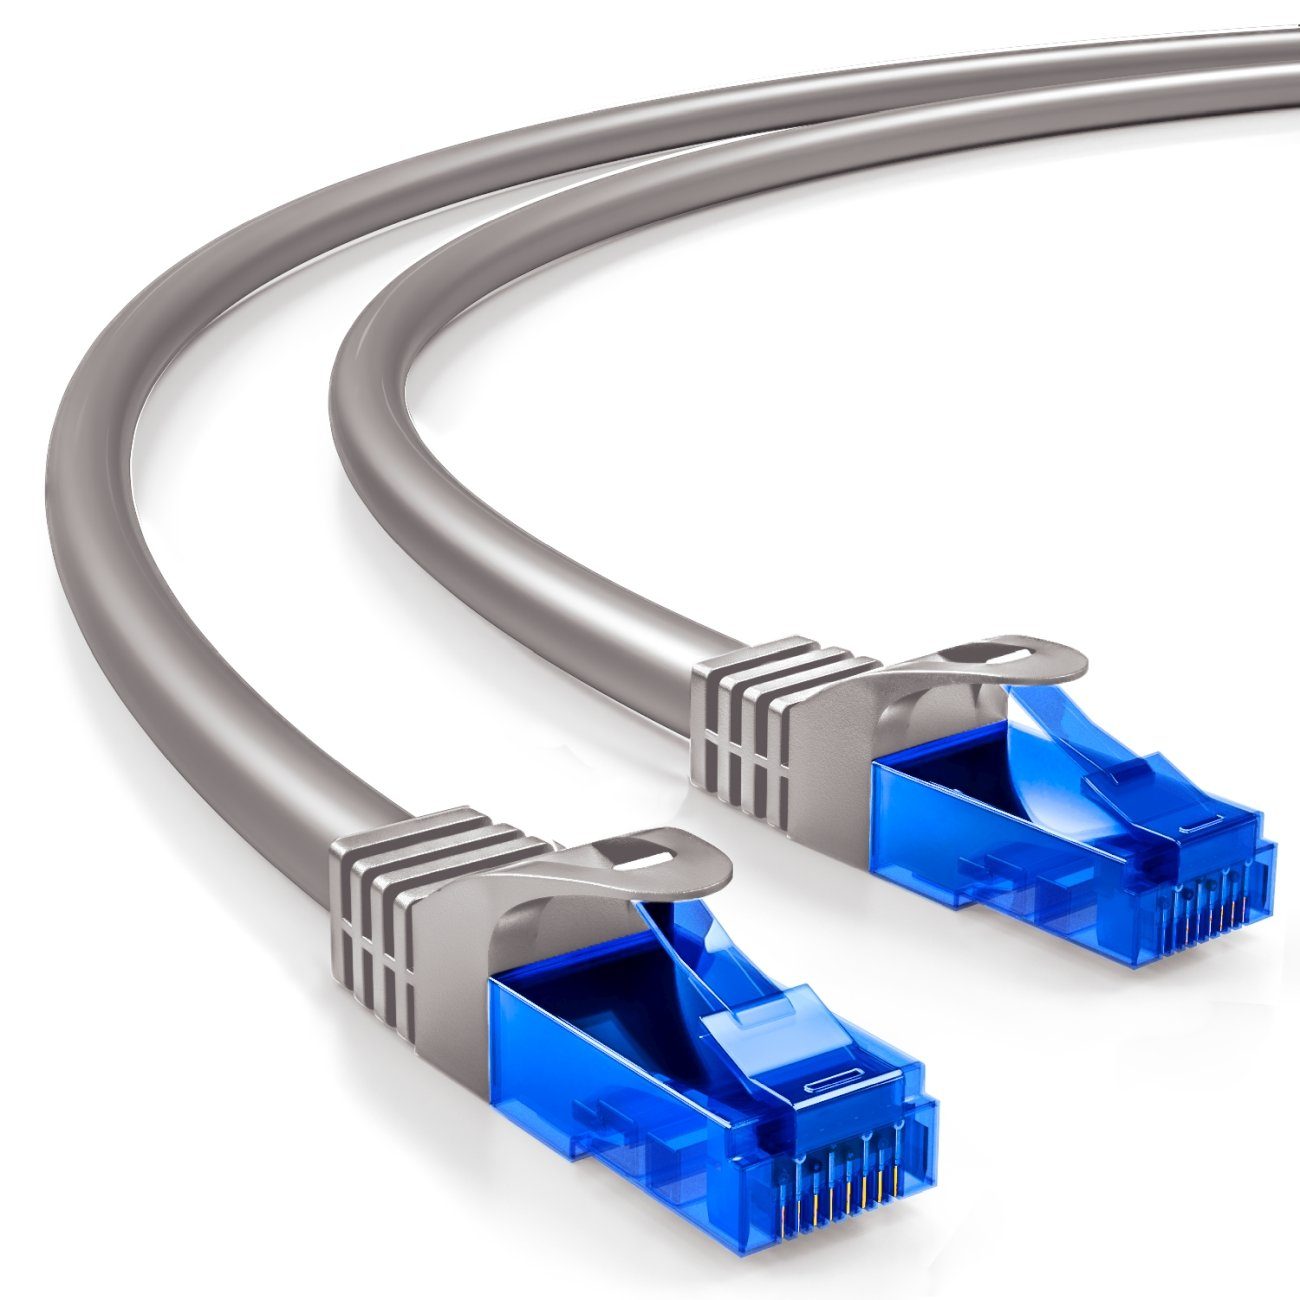 deleyCON »deleyCON 0,25m CAT6 Patchkabel Netzwerkkabel Ethernet LAN DSL  Kabel Grau« Netzwerkkabel online kaufen | OTTO